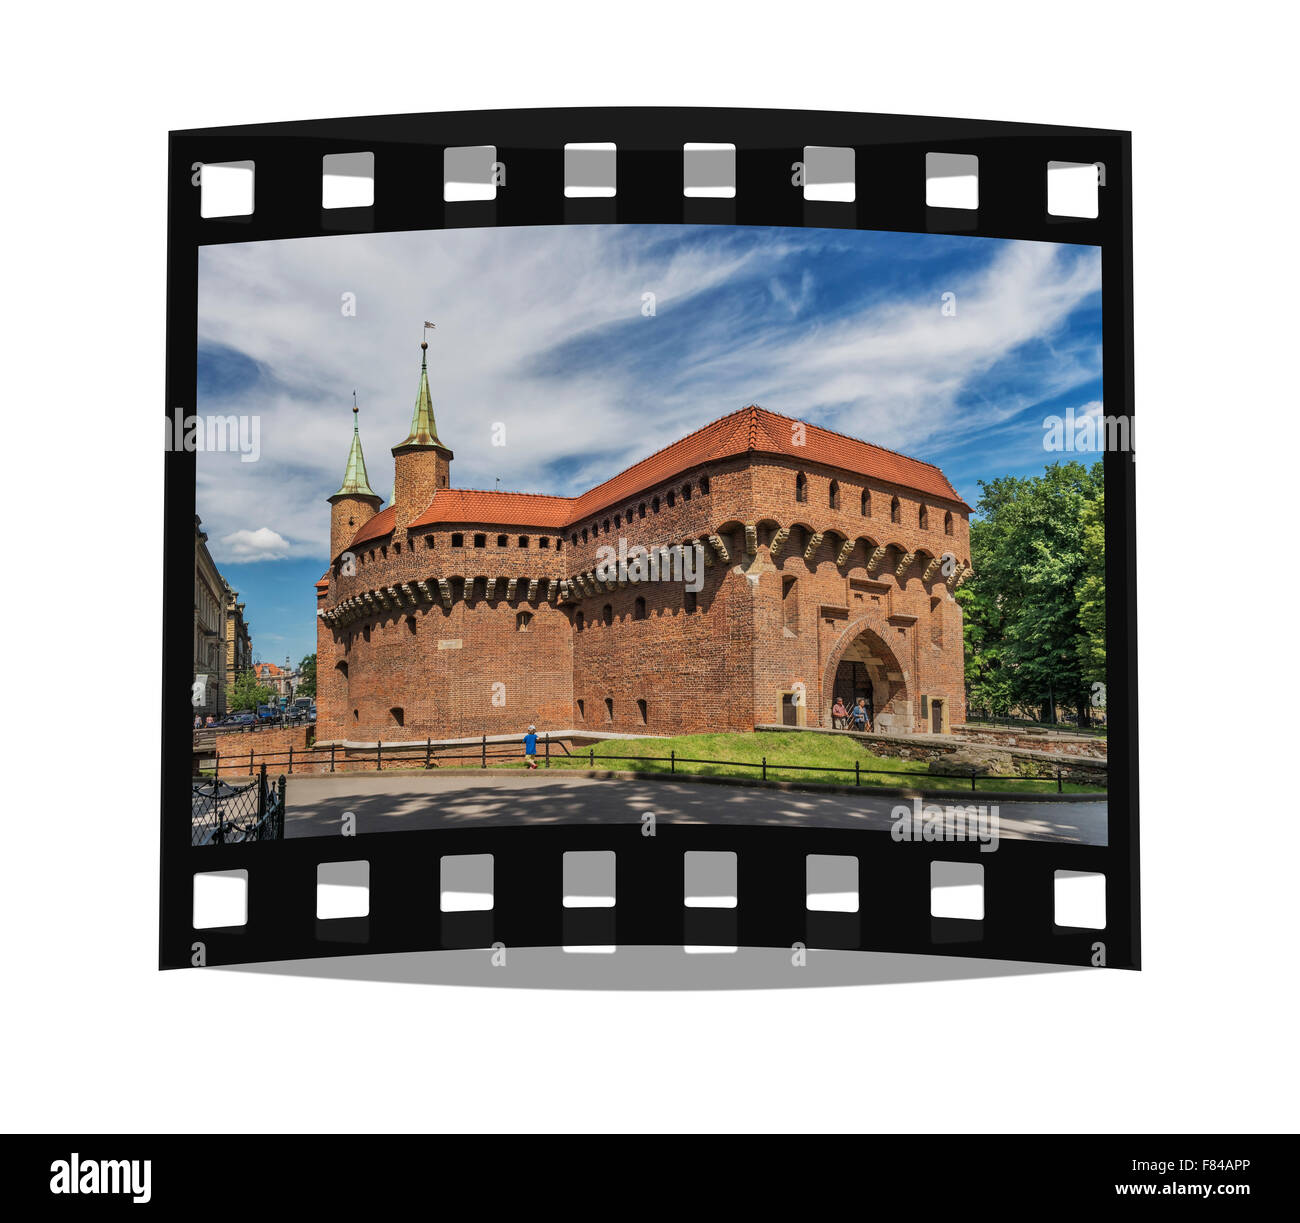 Die Barbakane in Krakau ist die größte erhaltene Barbakane Europas, gebaut von 1498, 1499, Kleinpolen, Polen, Europa Stockfoto